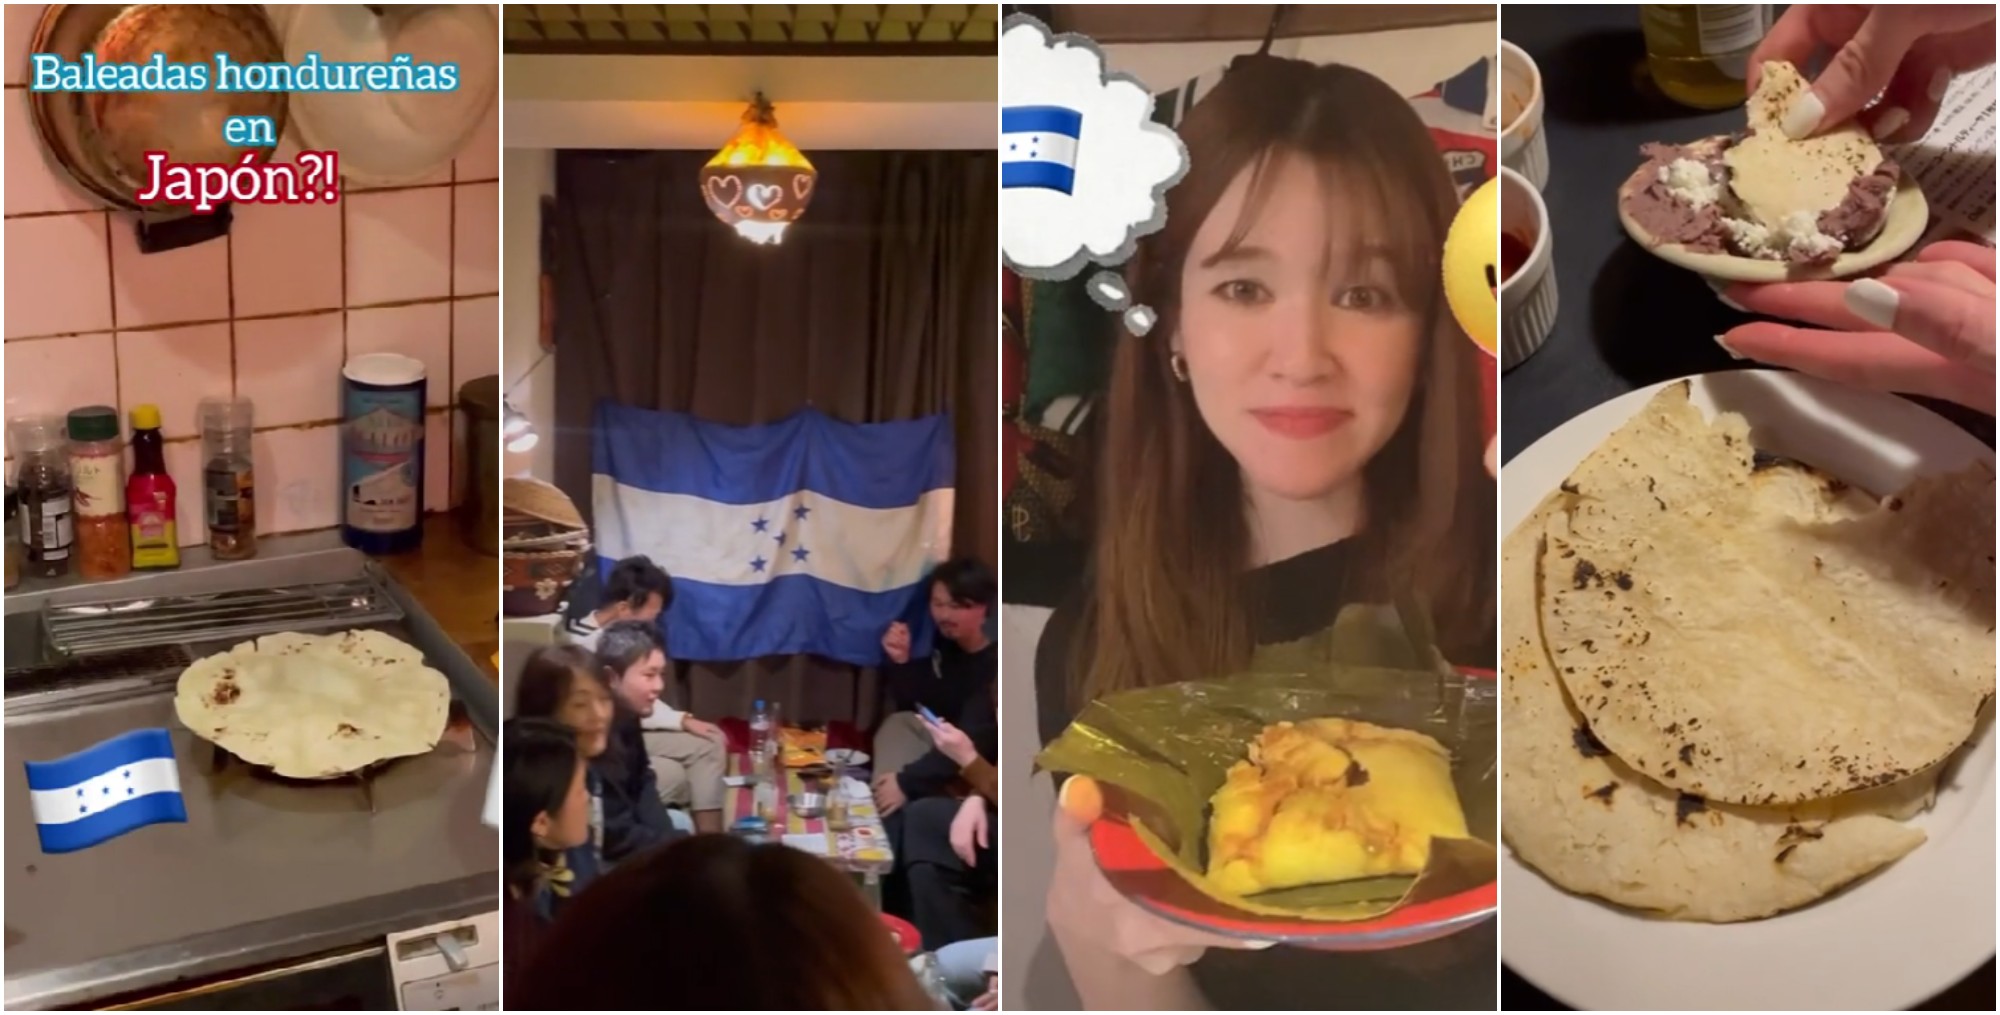 Japonés destaca con un restaurante de comida hondureña en su país